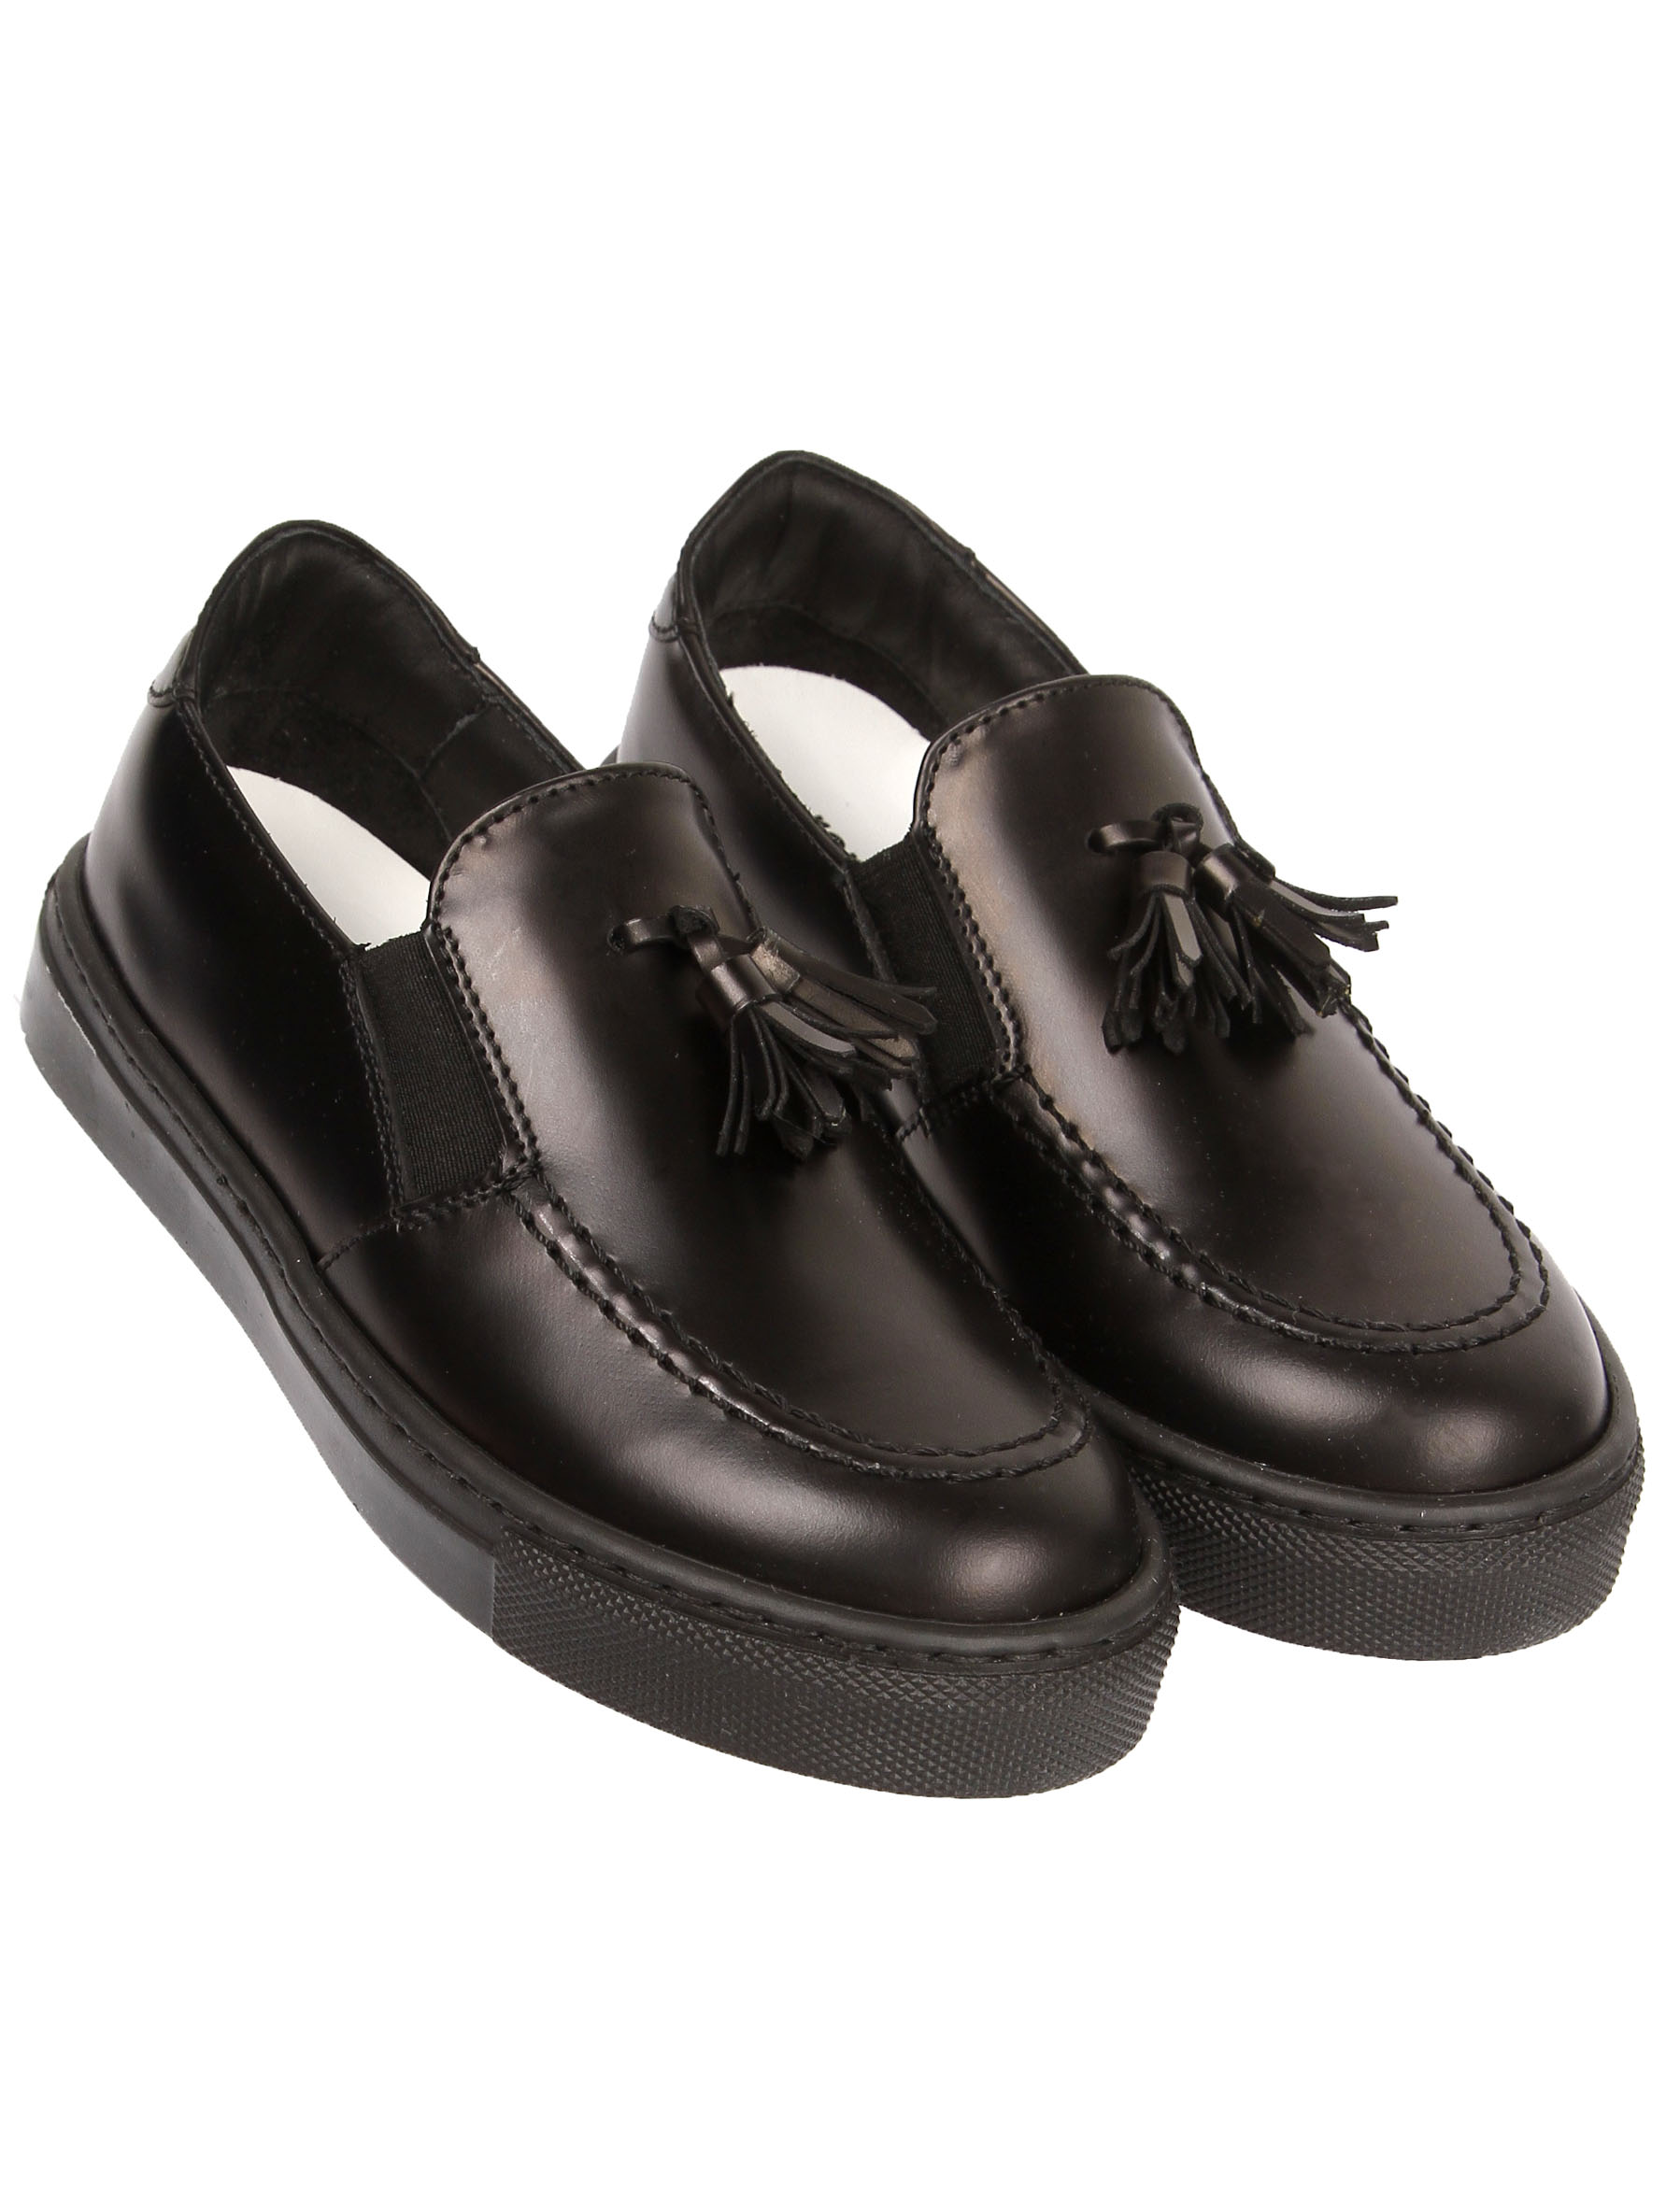 ботинки rondinella, черные